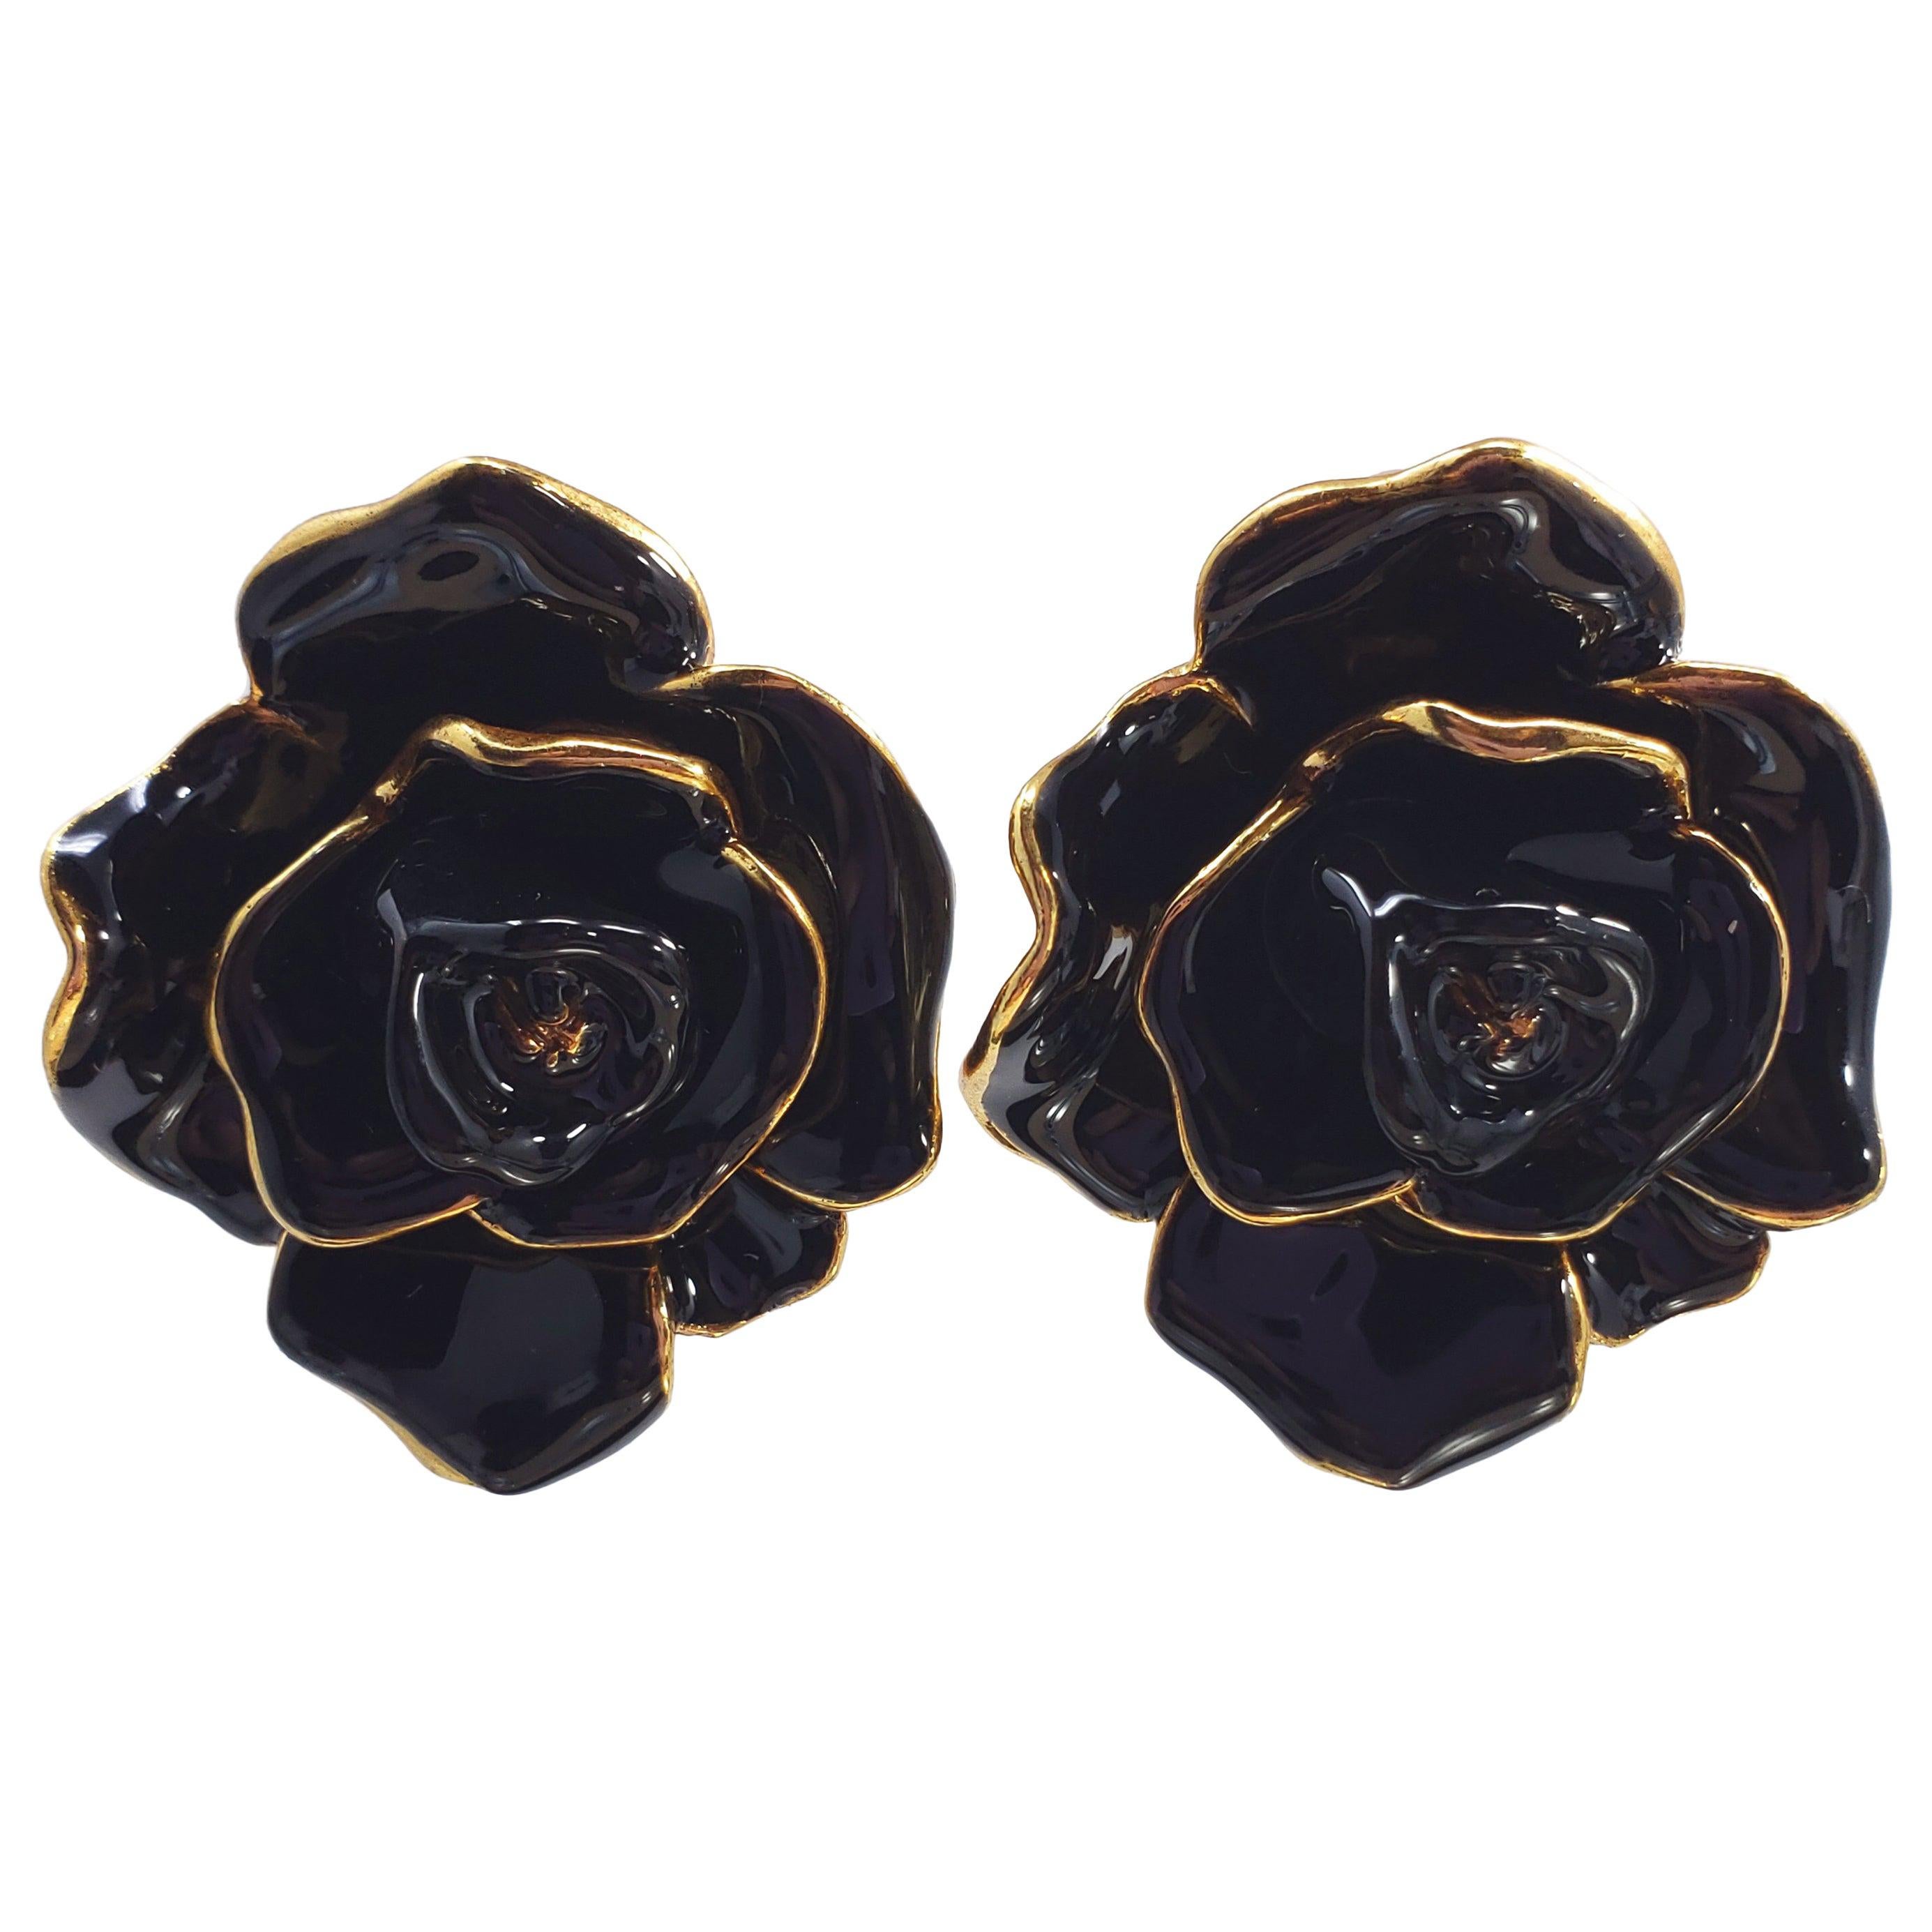 Oscar de la Renta Painted Black Rosette Button Flower Clip On Earrings in Gold